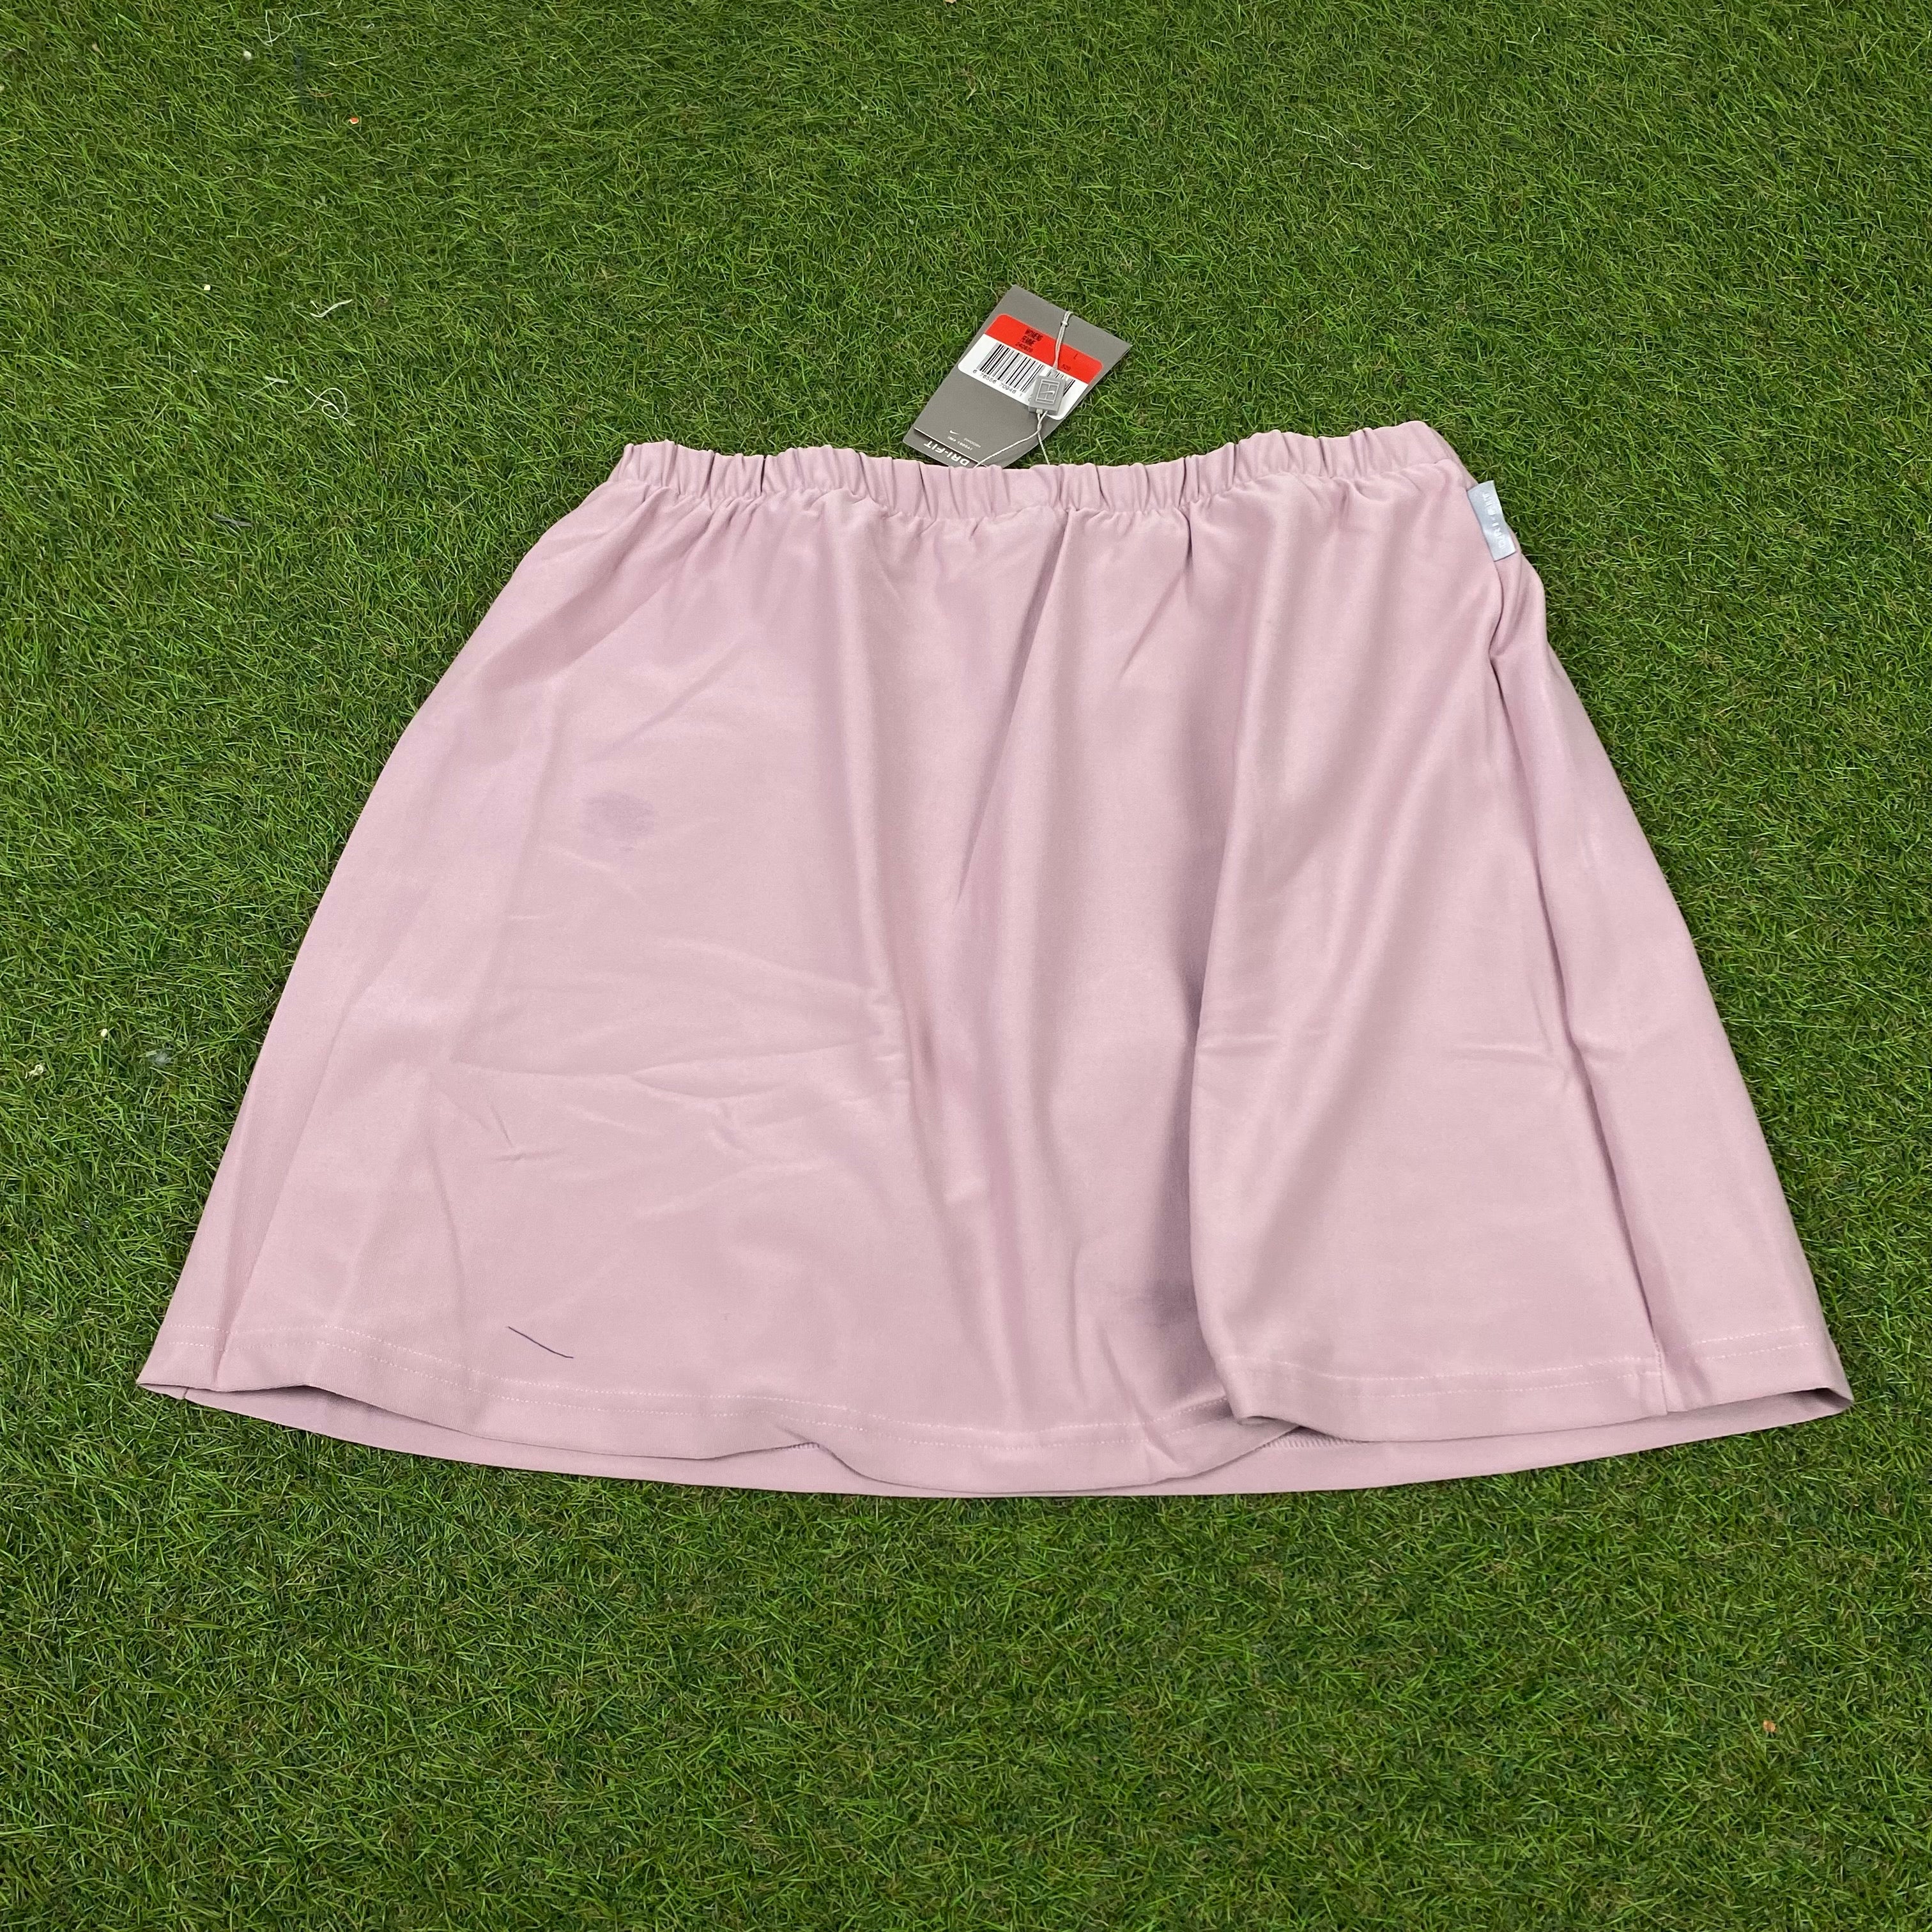 Vintage Nike Skirt Skort Pink Large